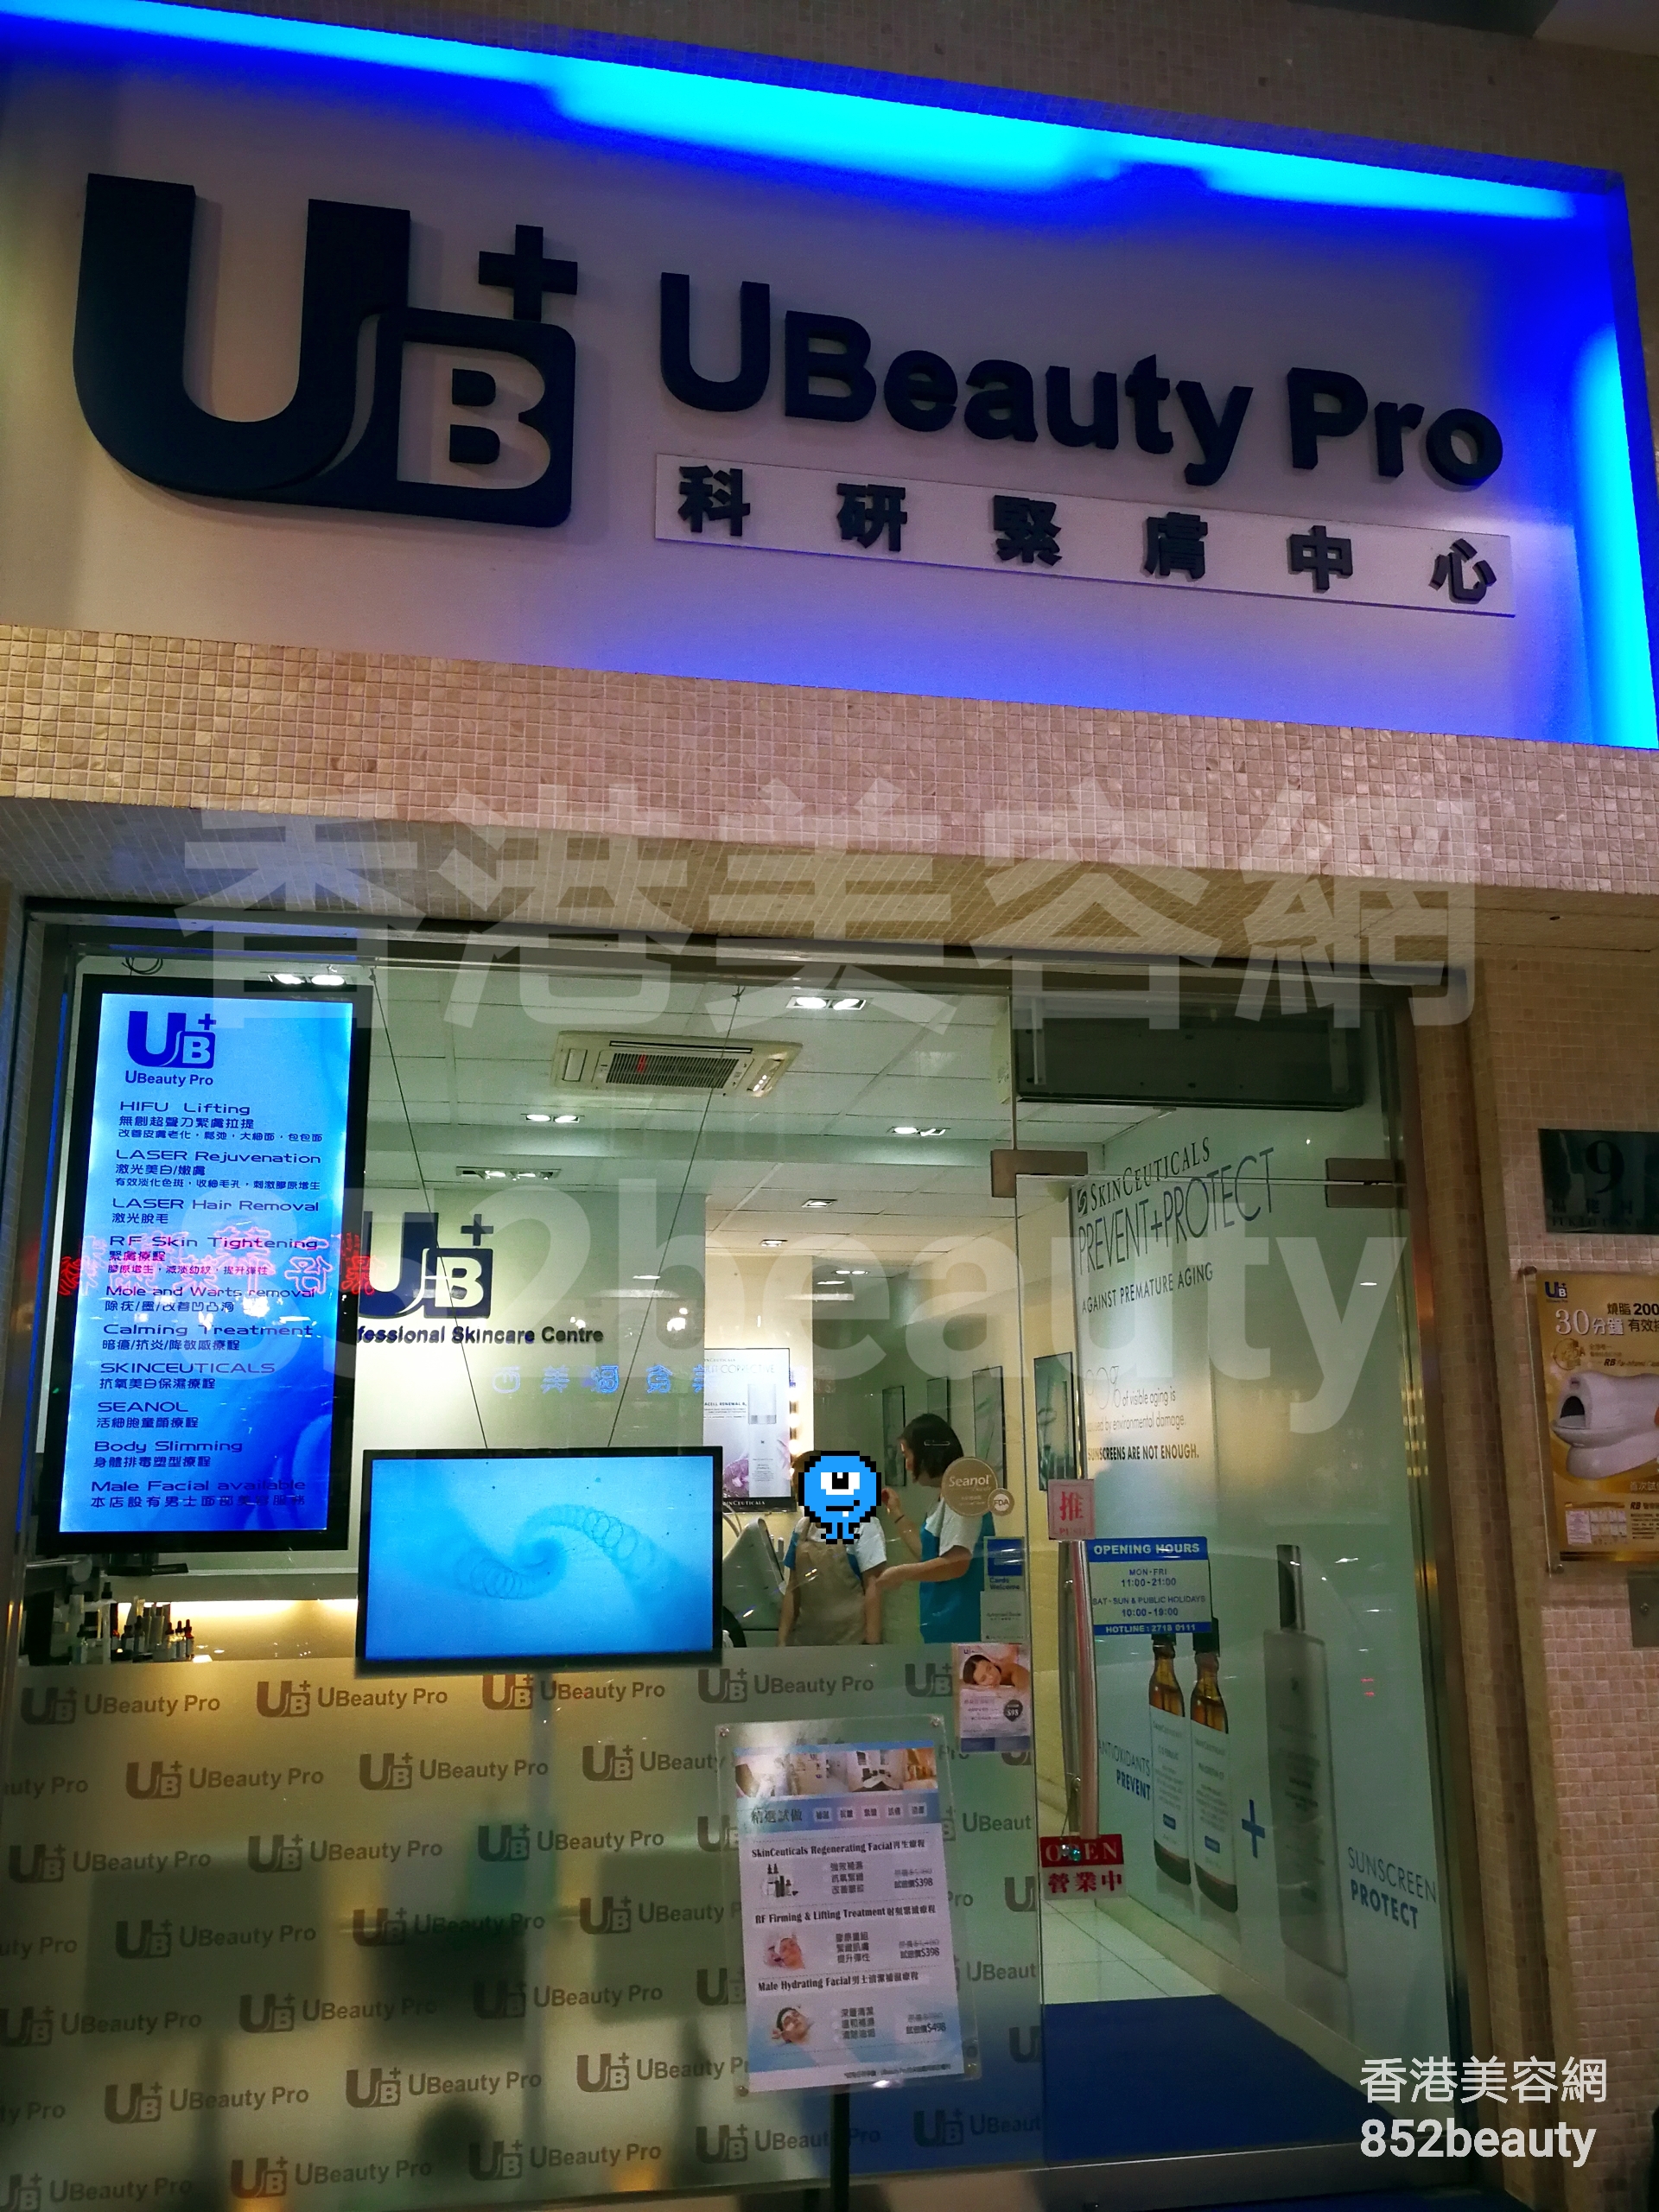 香港美容網 Hong Kong Beauty Salon 美容院 / 美容師: Ubeauty Pro (九龍城旗艦店)